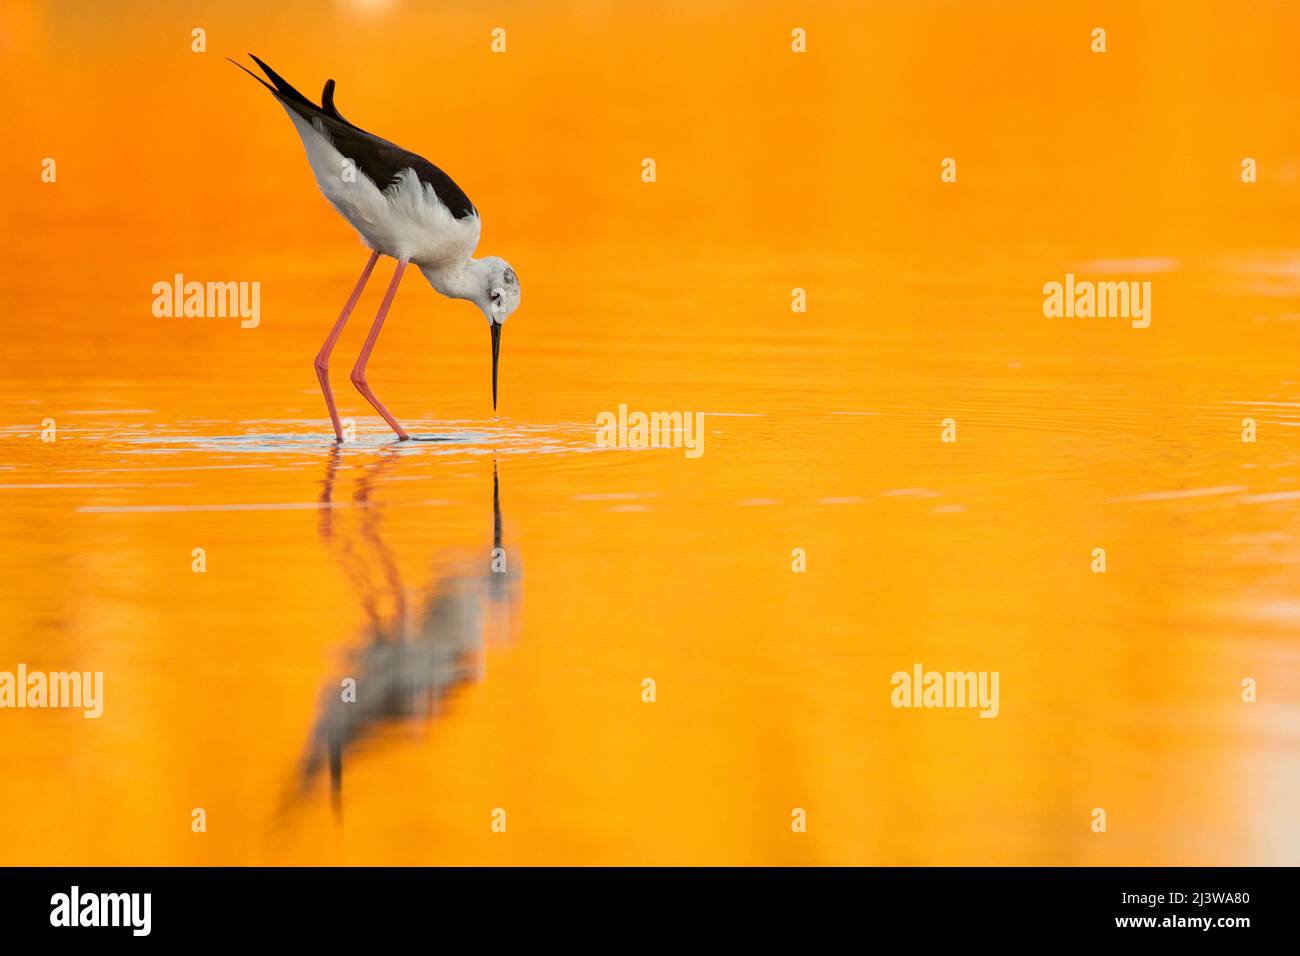 Maschio Slilt alare nero (Himantopus himantopus) che guado in acqua un tramonto arancione colora l'acqua e gli uccelli riflessione. Fotografato in Israele in Foto Stock